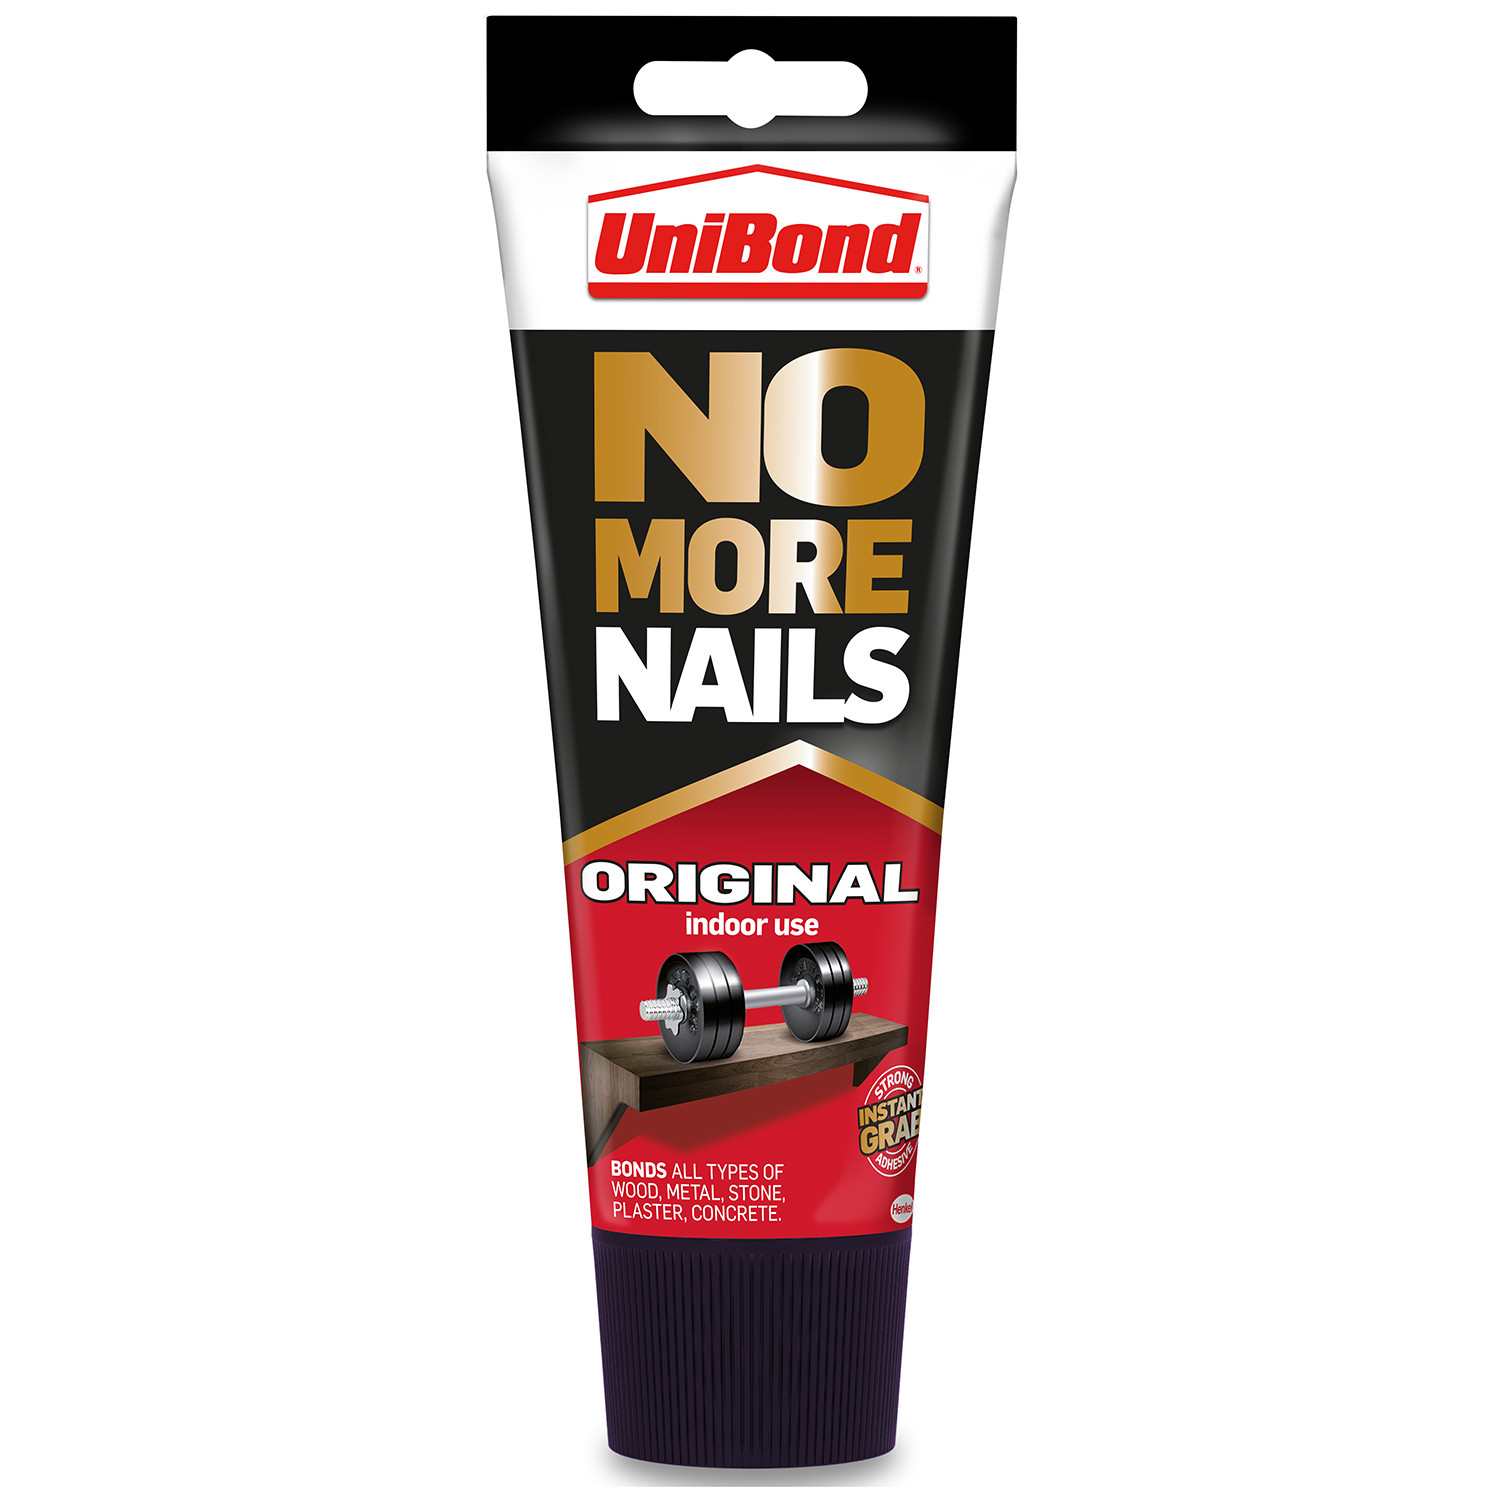 UniBond No More Nails Grab Adhesive Tube 234g Image 1